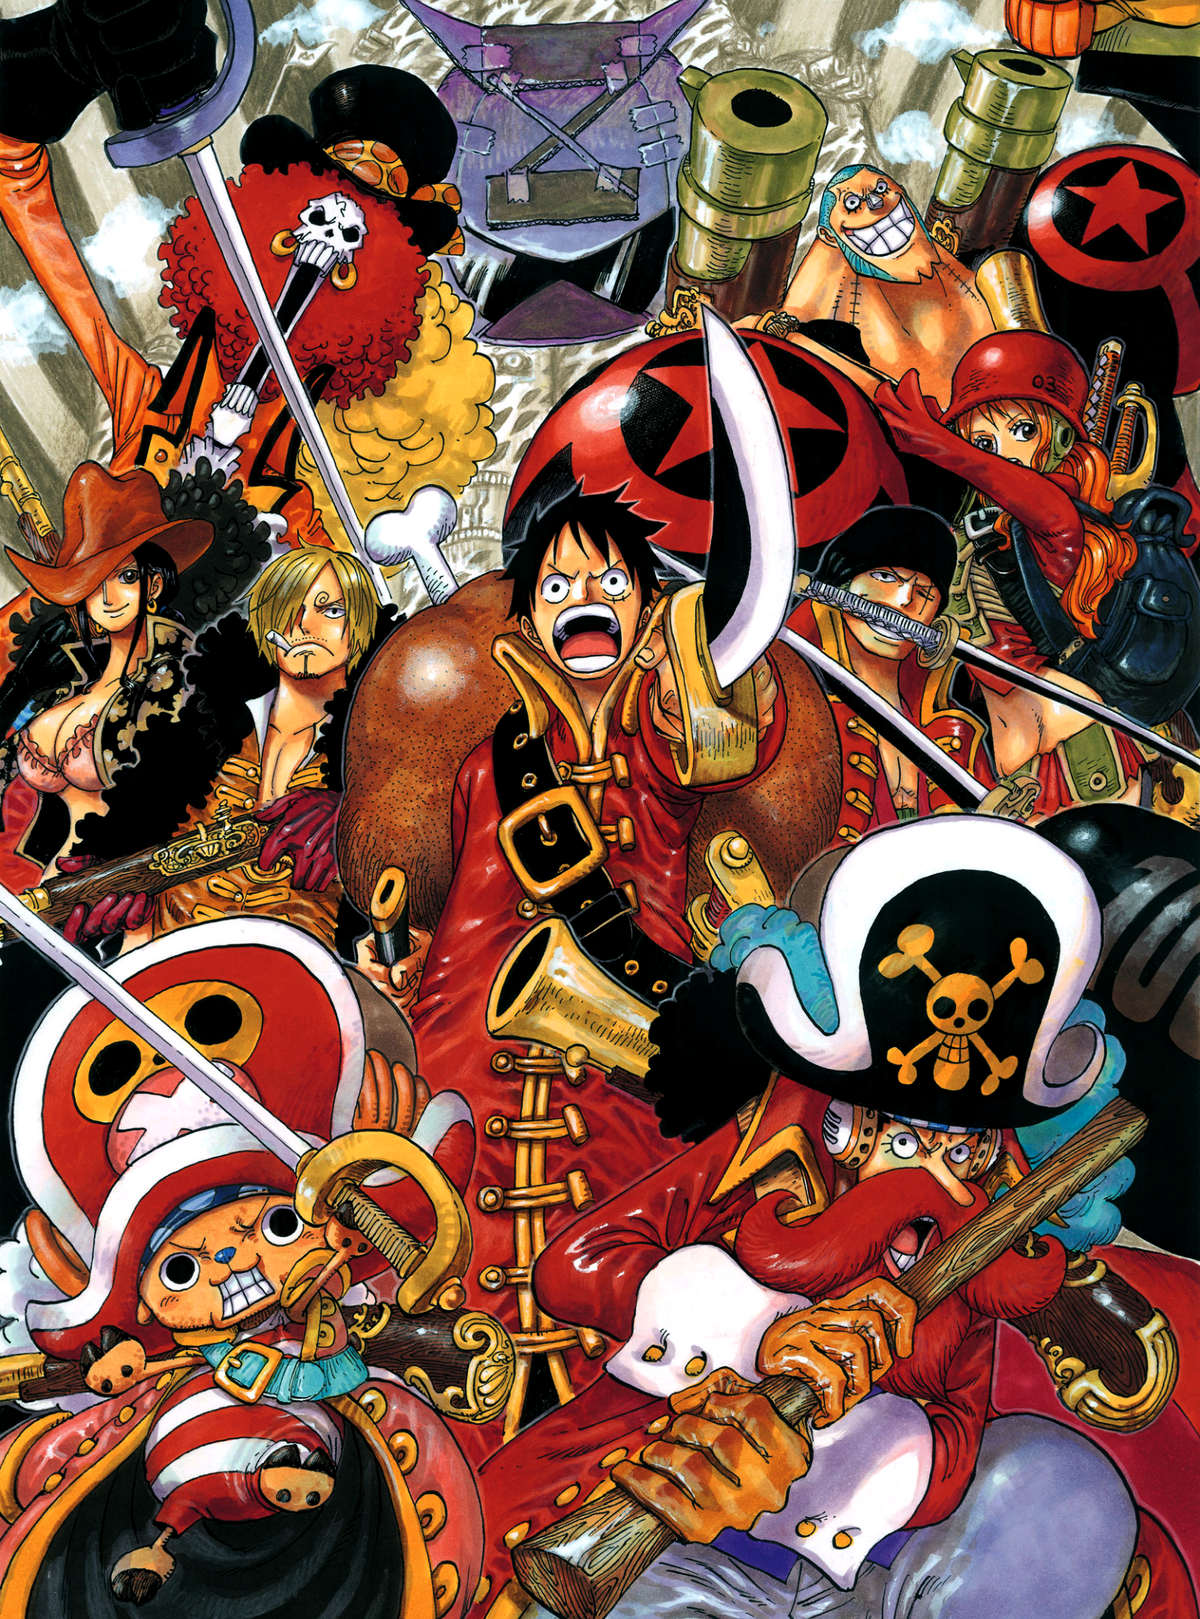 One Piece Film: Red, de qué trata y cómo ver: lo que sabemos sobre